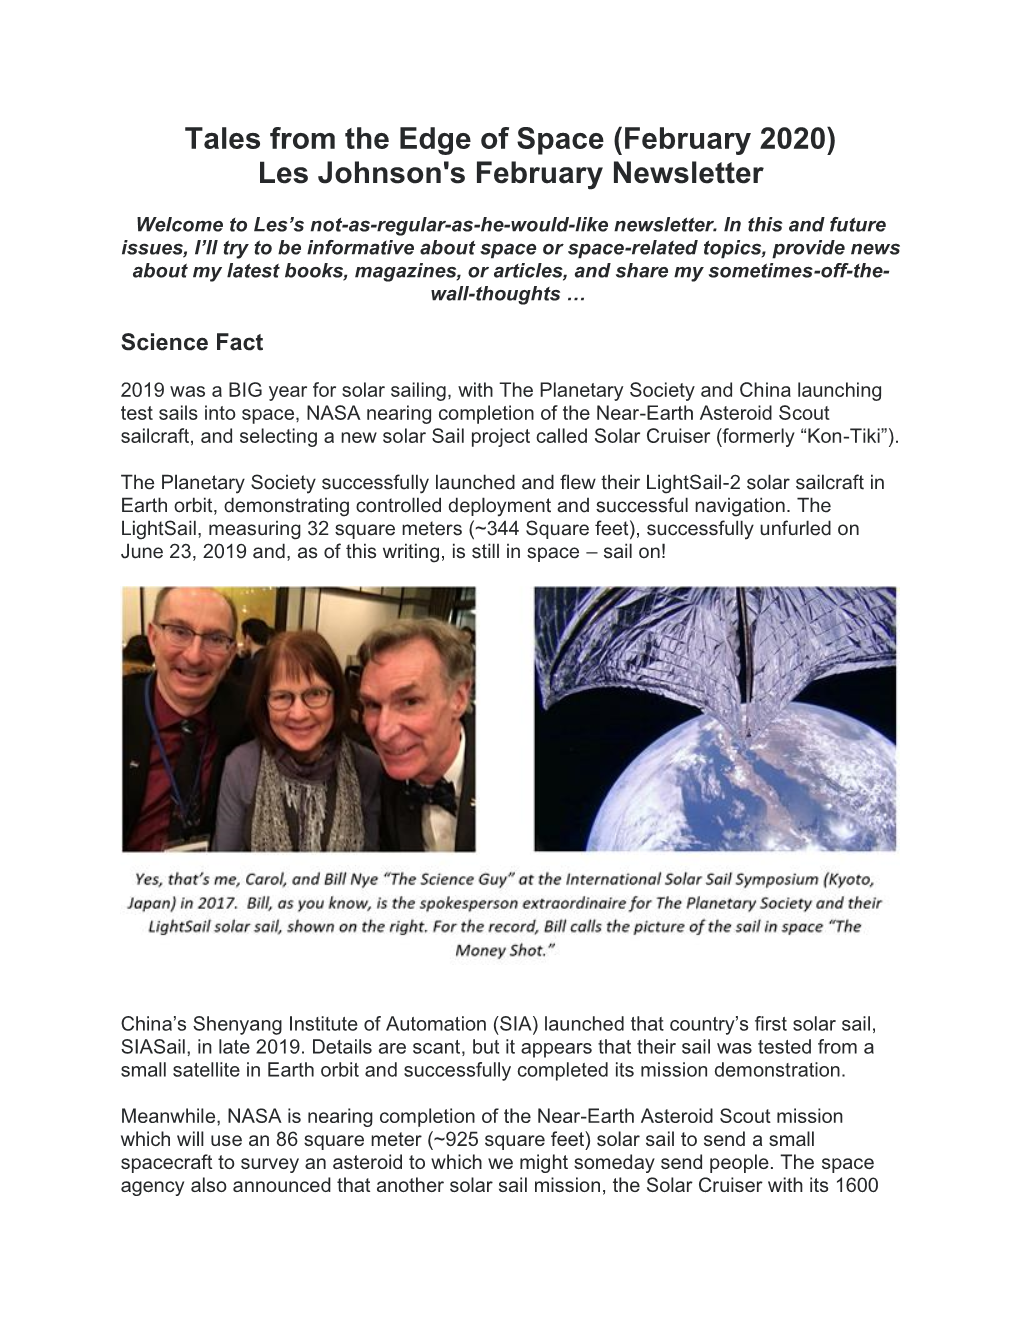 Les Johnson's February Newsletter